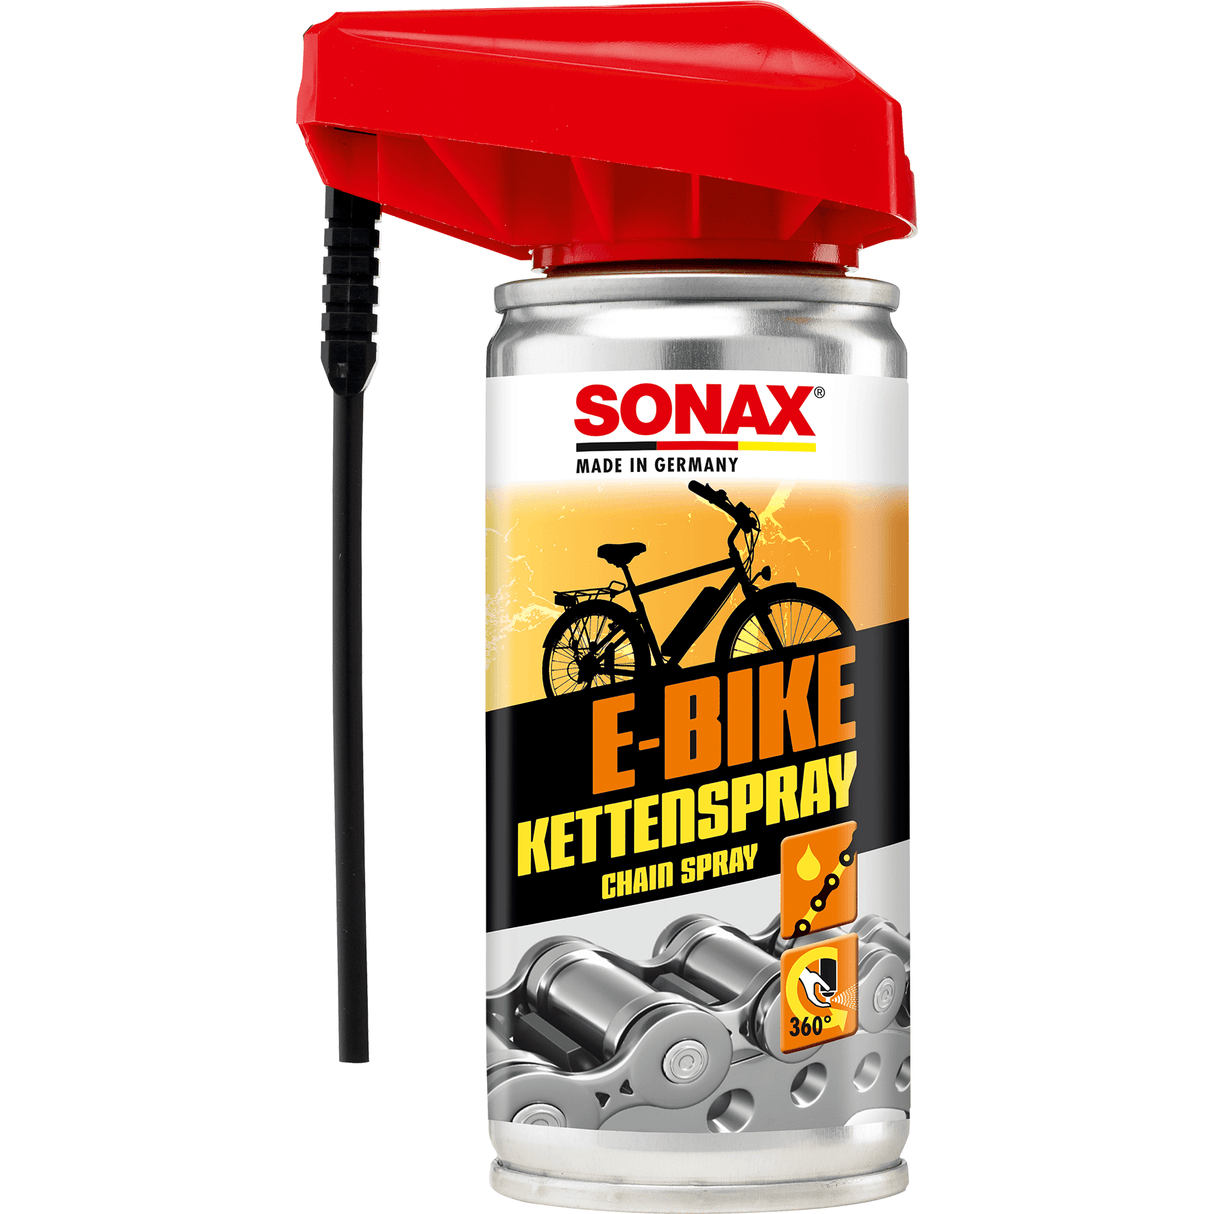 SONAX E-BIKE Kæde Spray - Xpert Cleaning